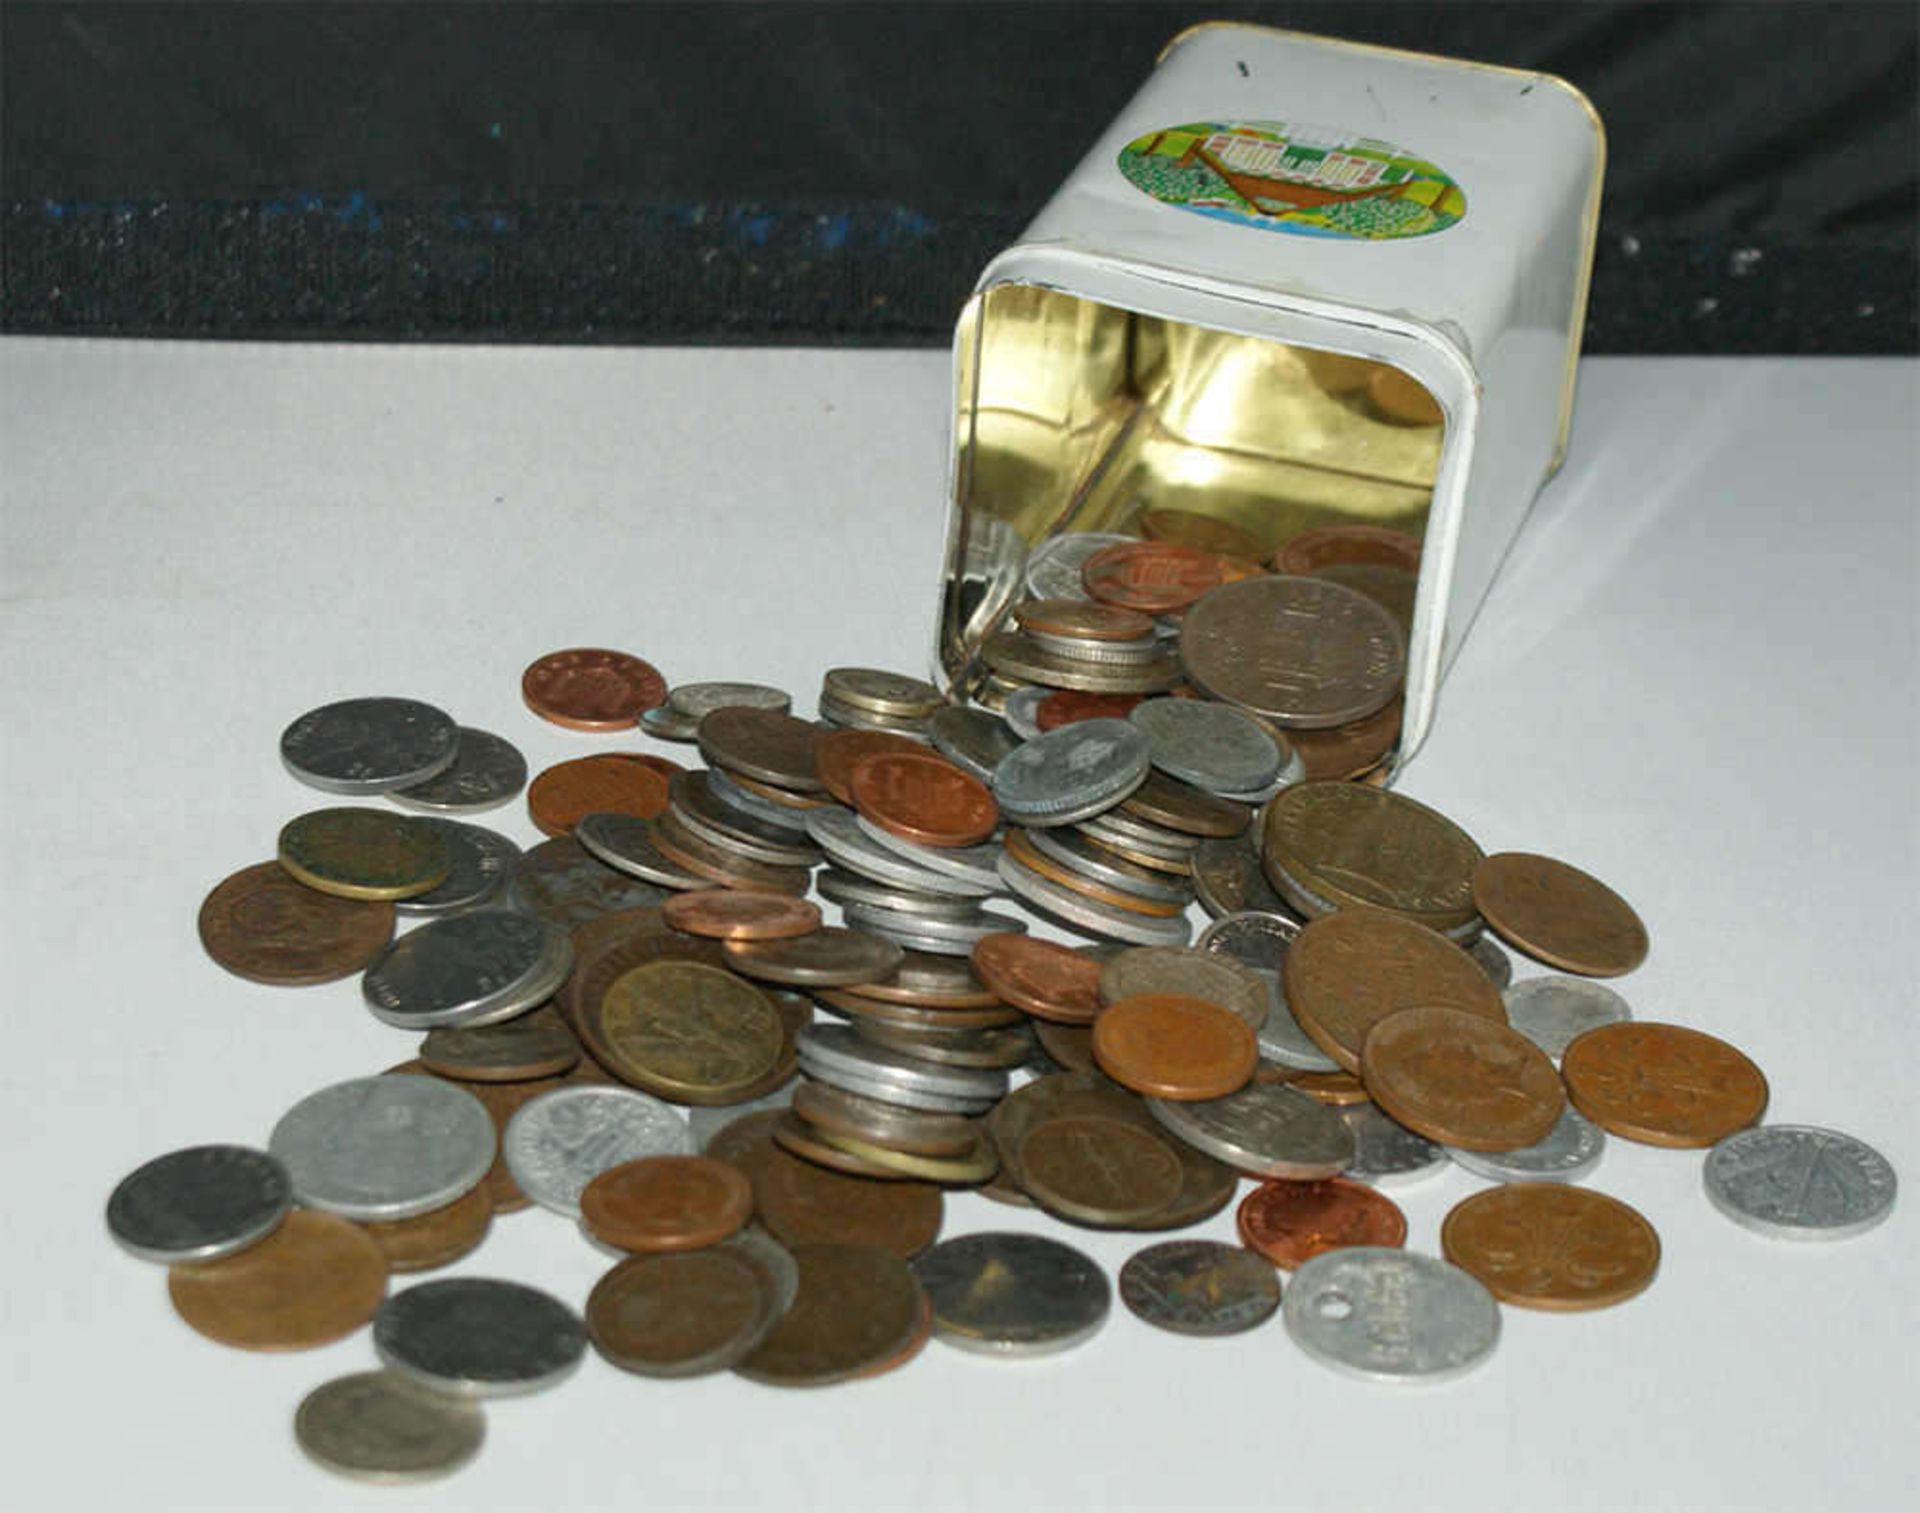 kleines Lot Münzen, dabei ältere in einer Blechdose. Kleine Fundgrube